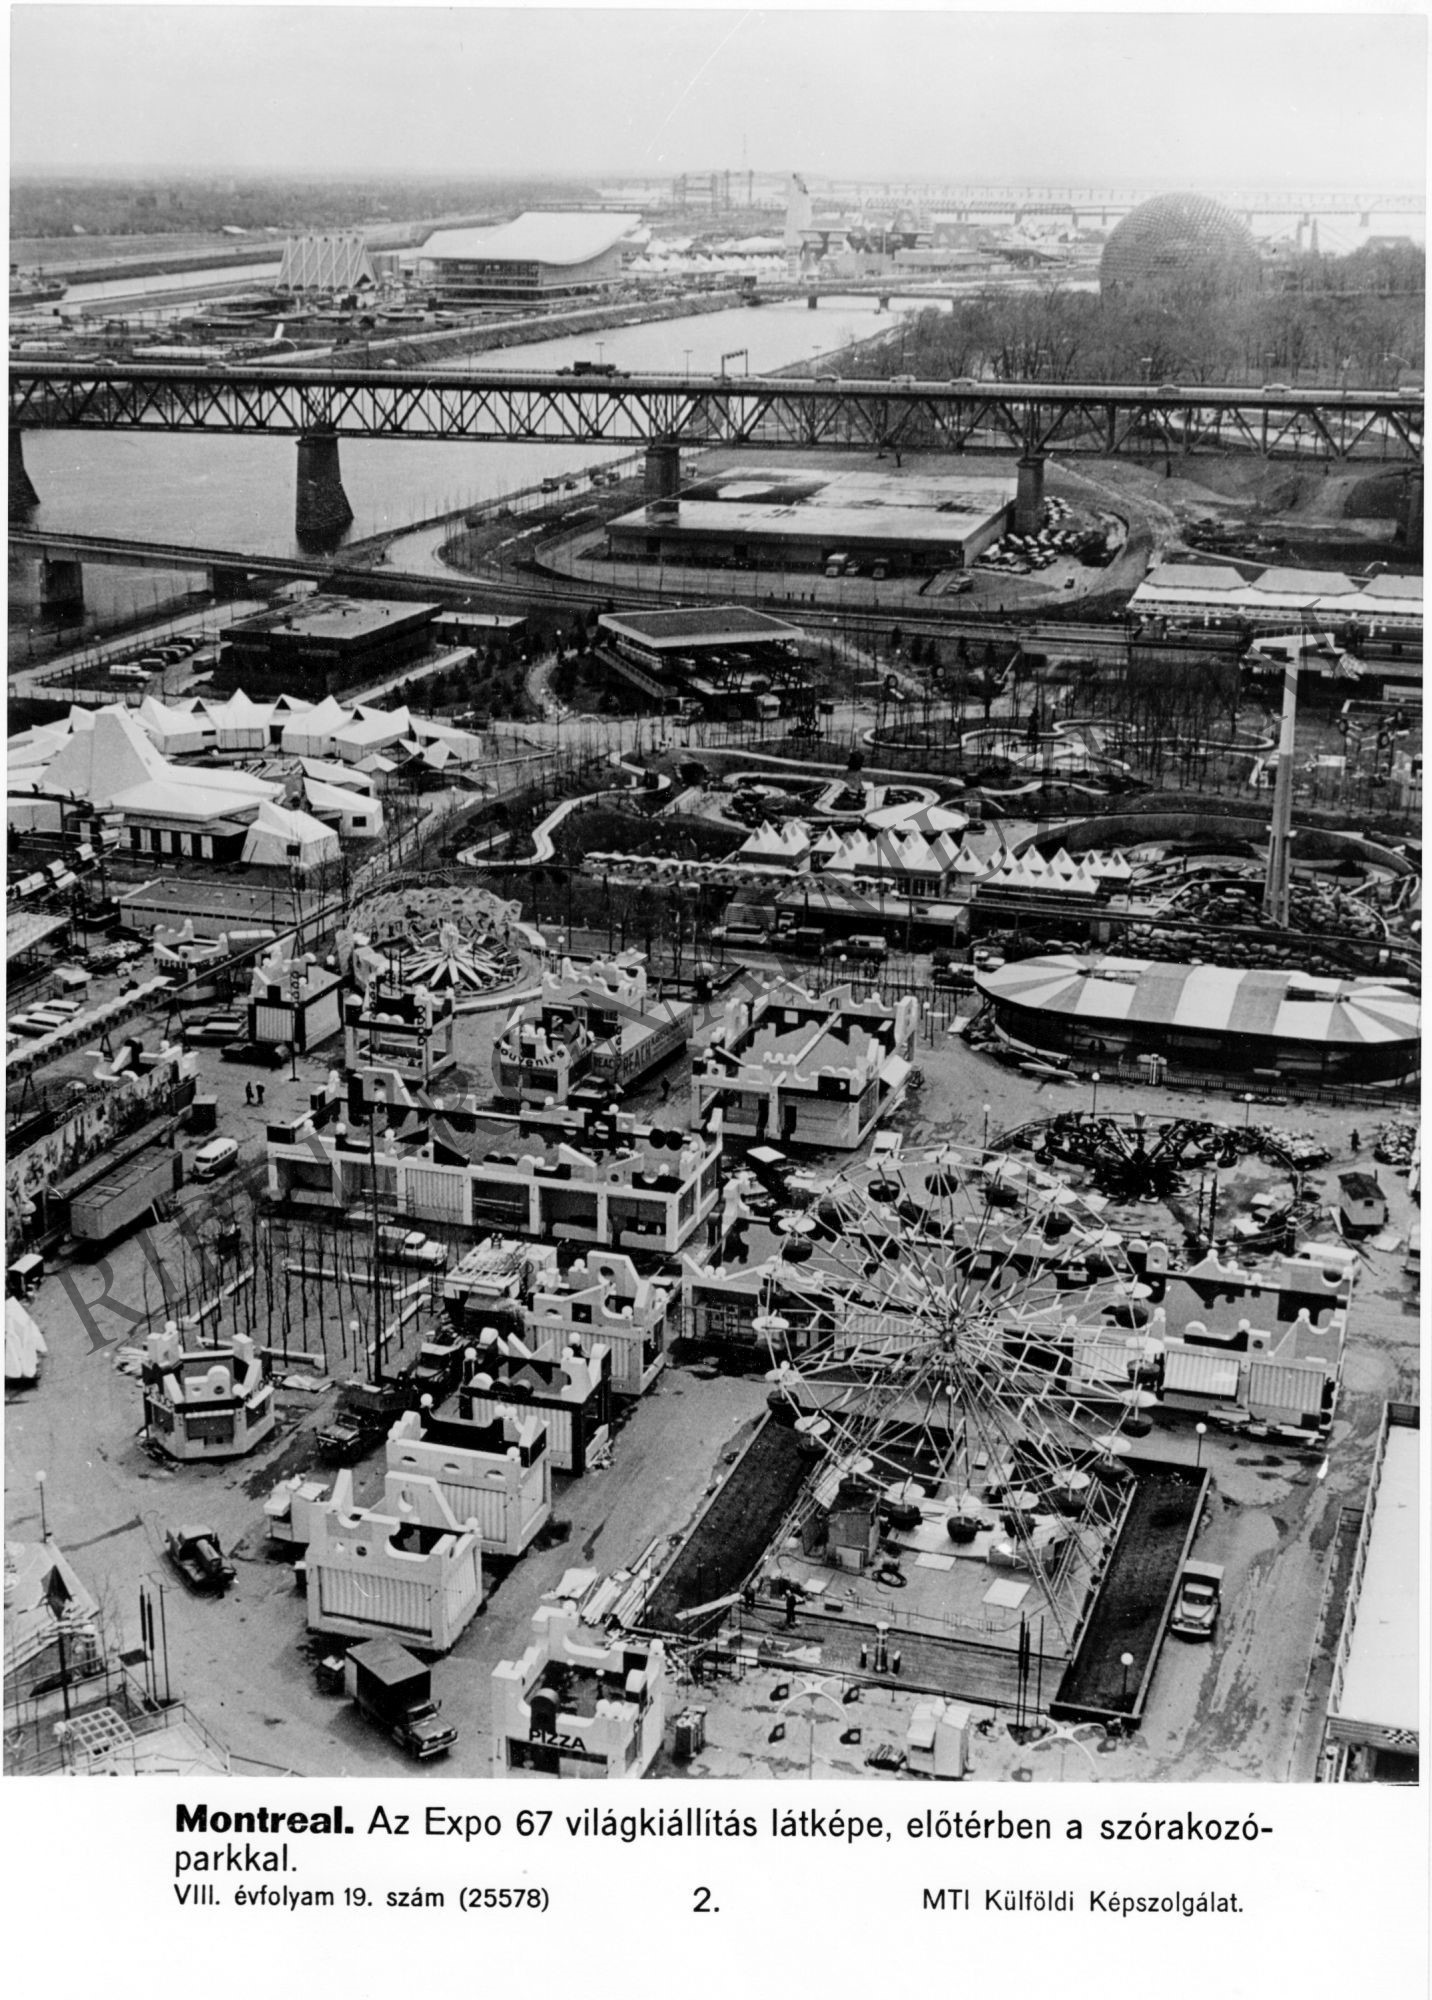 A montreáli Expo 67 világkiállítás látképe (Rippl-Rónai Múzeum CC BY-NC-SA)